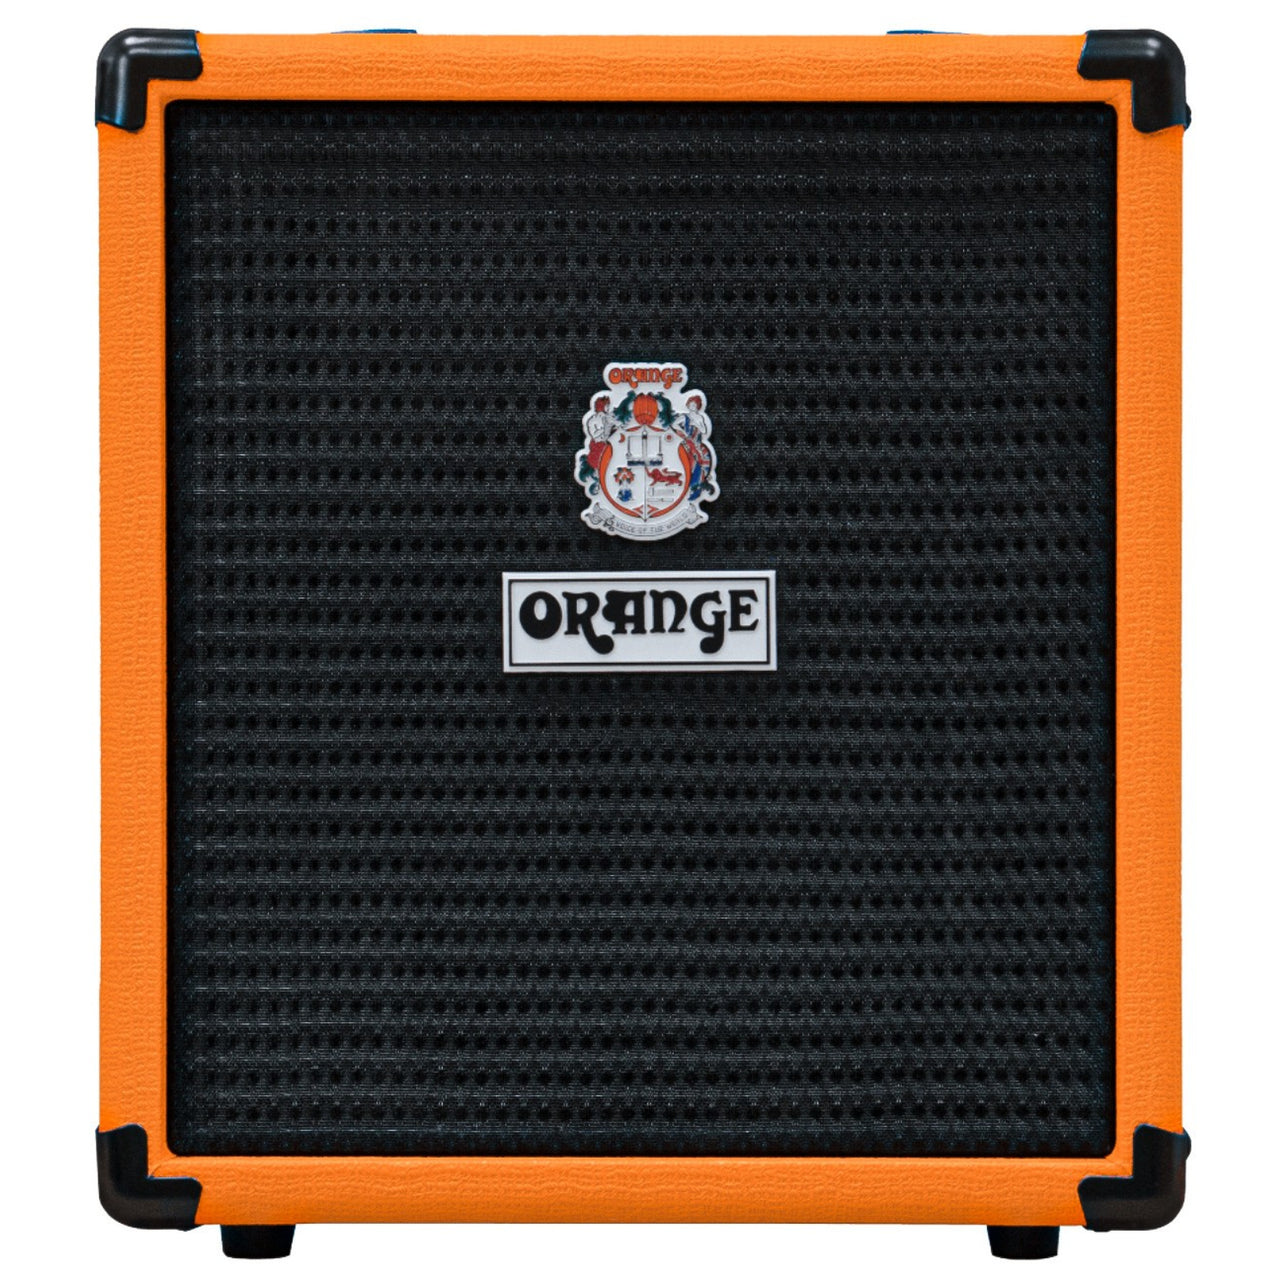 Amplificador Orange Crush Bass 25 Para Bajo Electrico